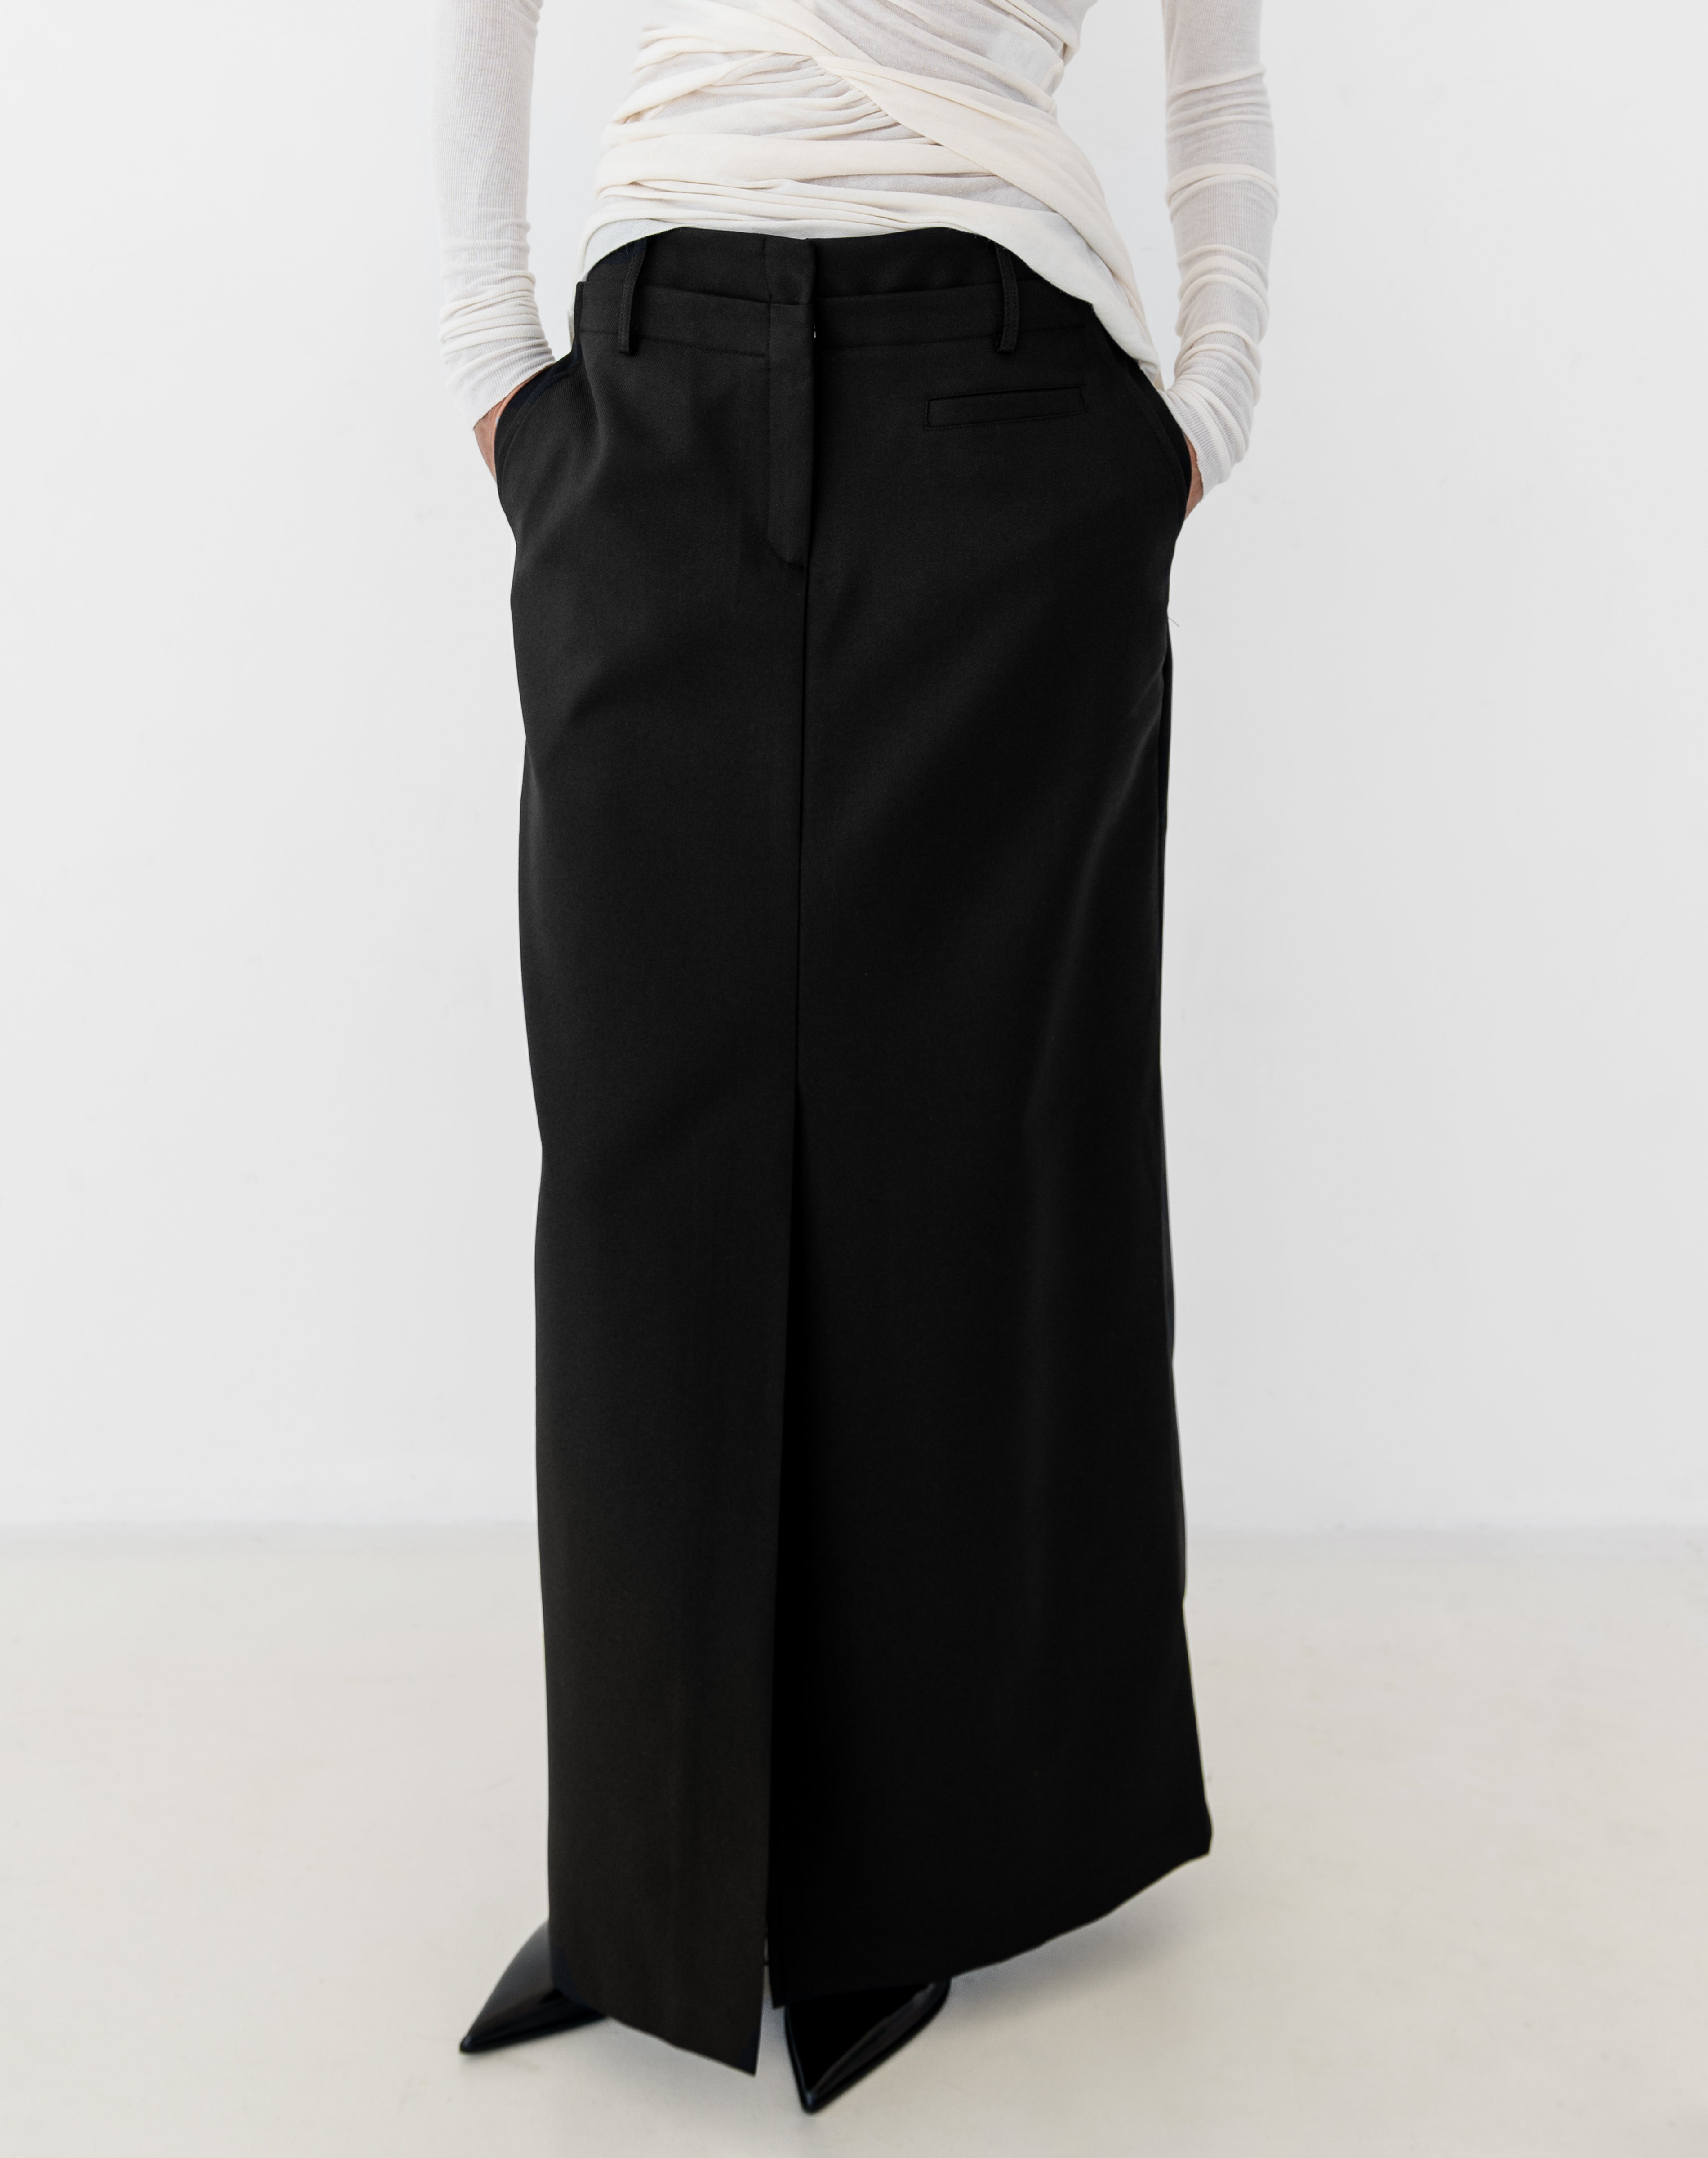 Paisley Slit Long Column Skirt, Black